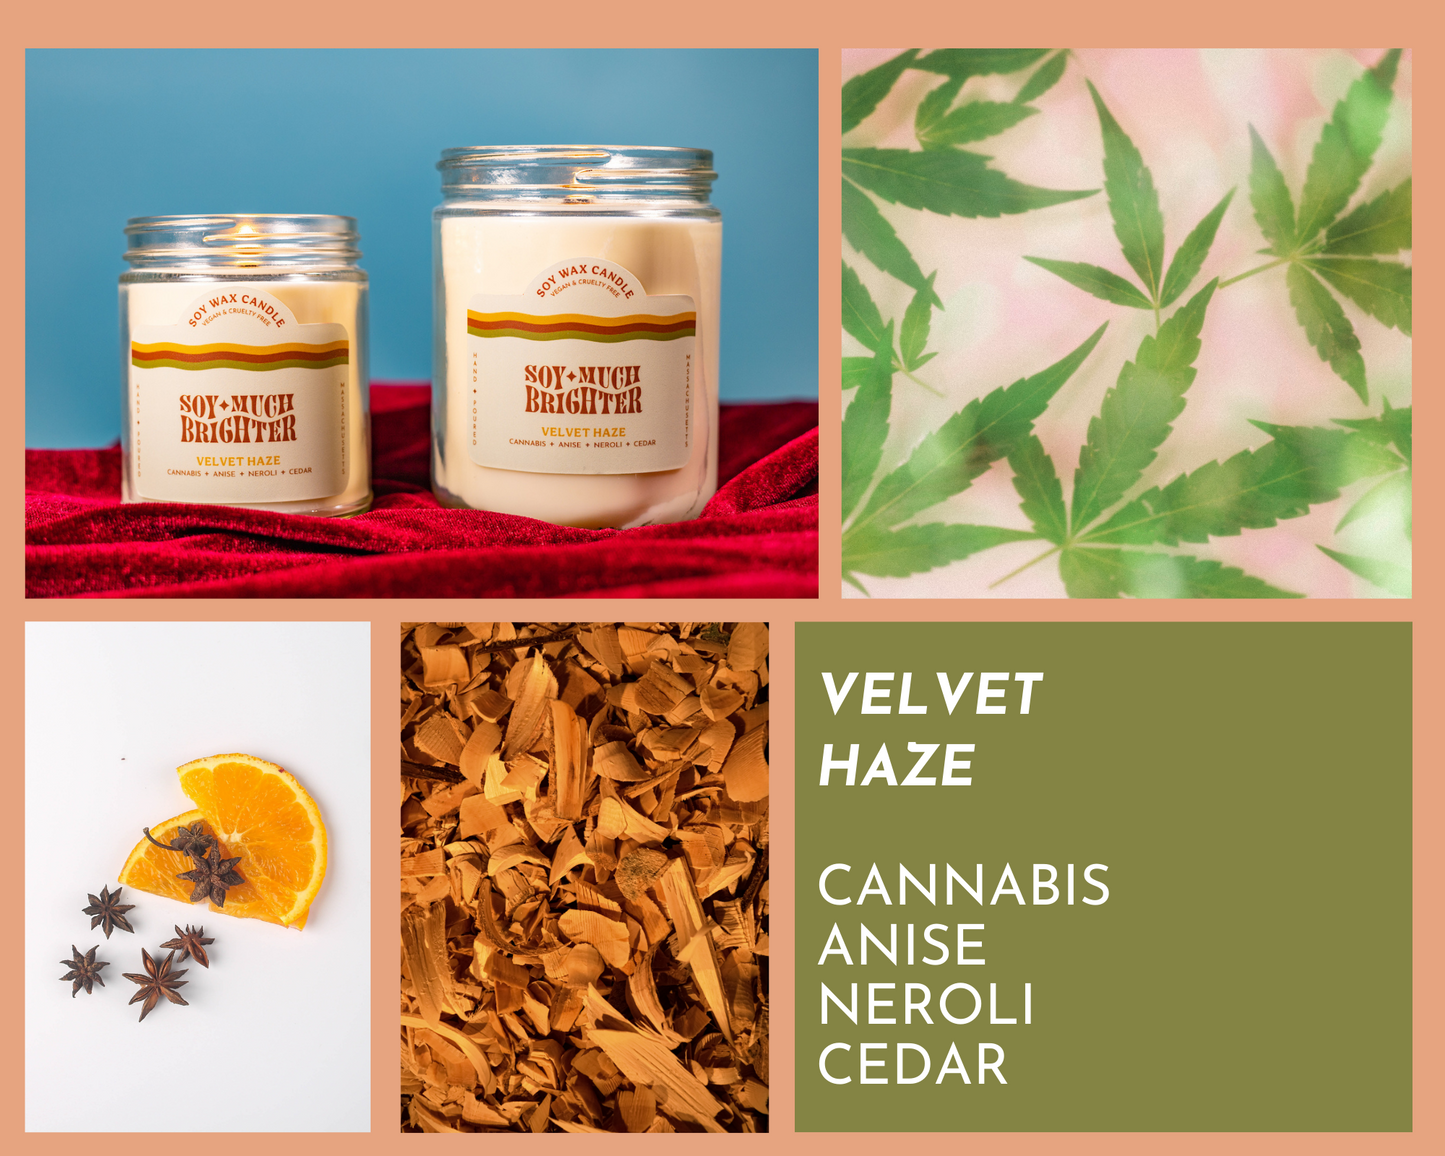 Velvet Haze is a concoction of cannabis, anise, neroli, and cedar